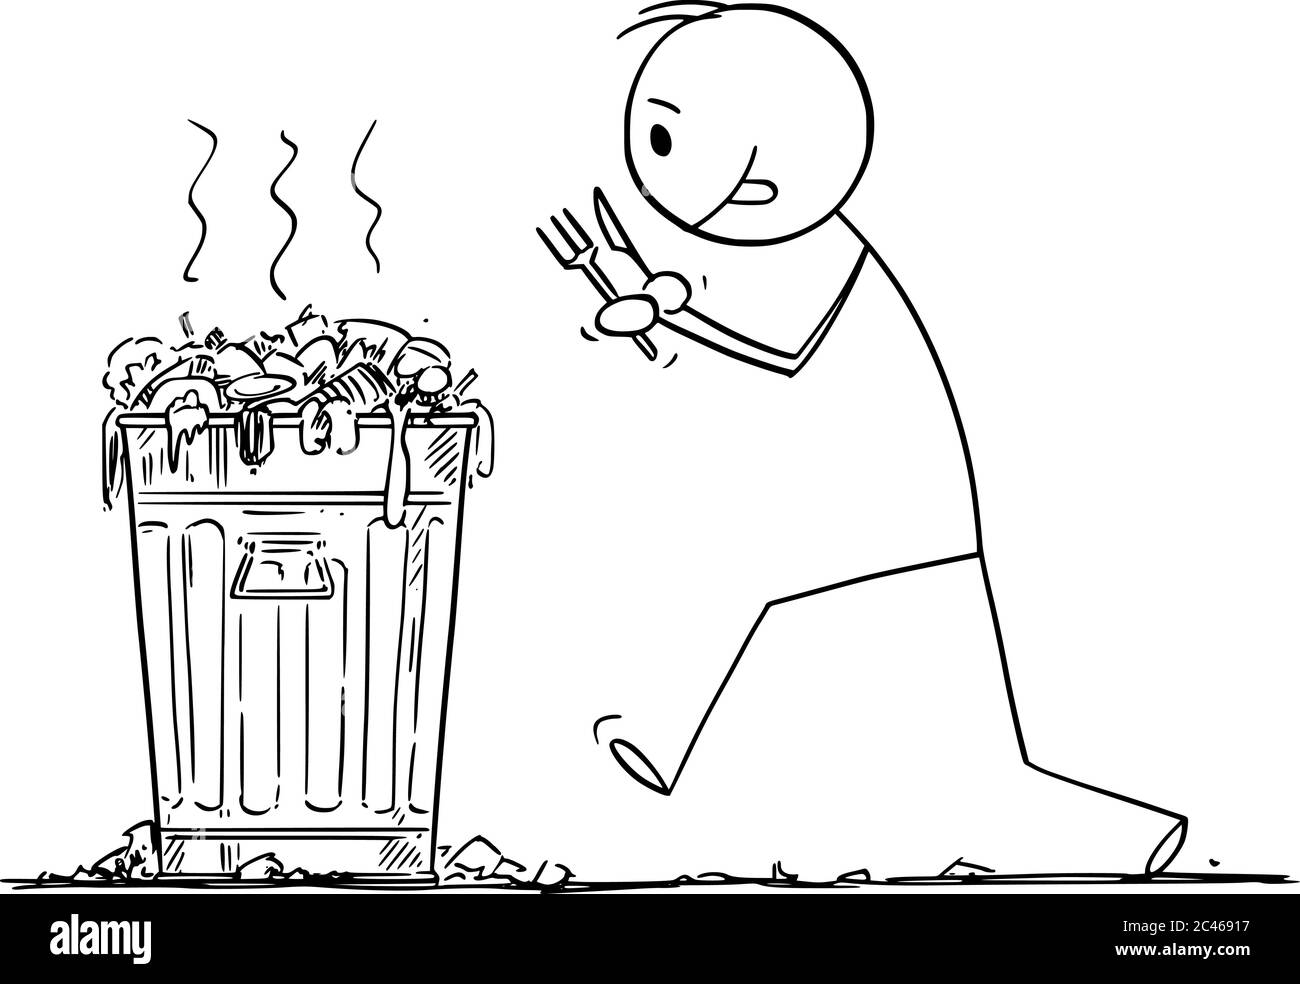 Vektor Cartoon Stick Figur Zeichnung konzeptionelle Illustration von hungrigen Mann mit Gabel und Messer wird Junk-Food aus Mülltonne essen. Stock Vektor